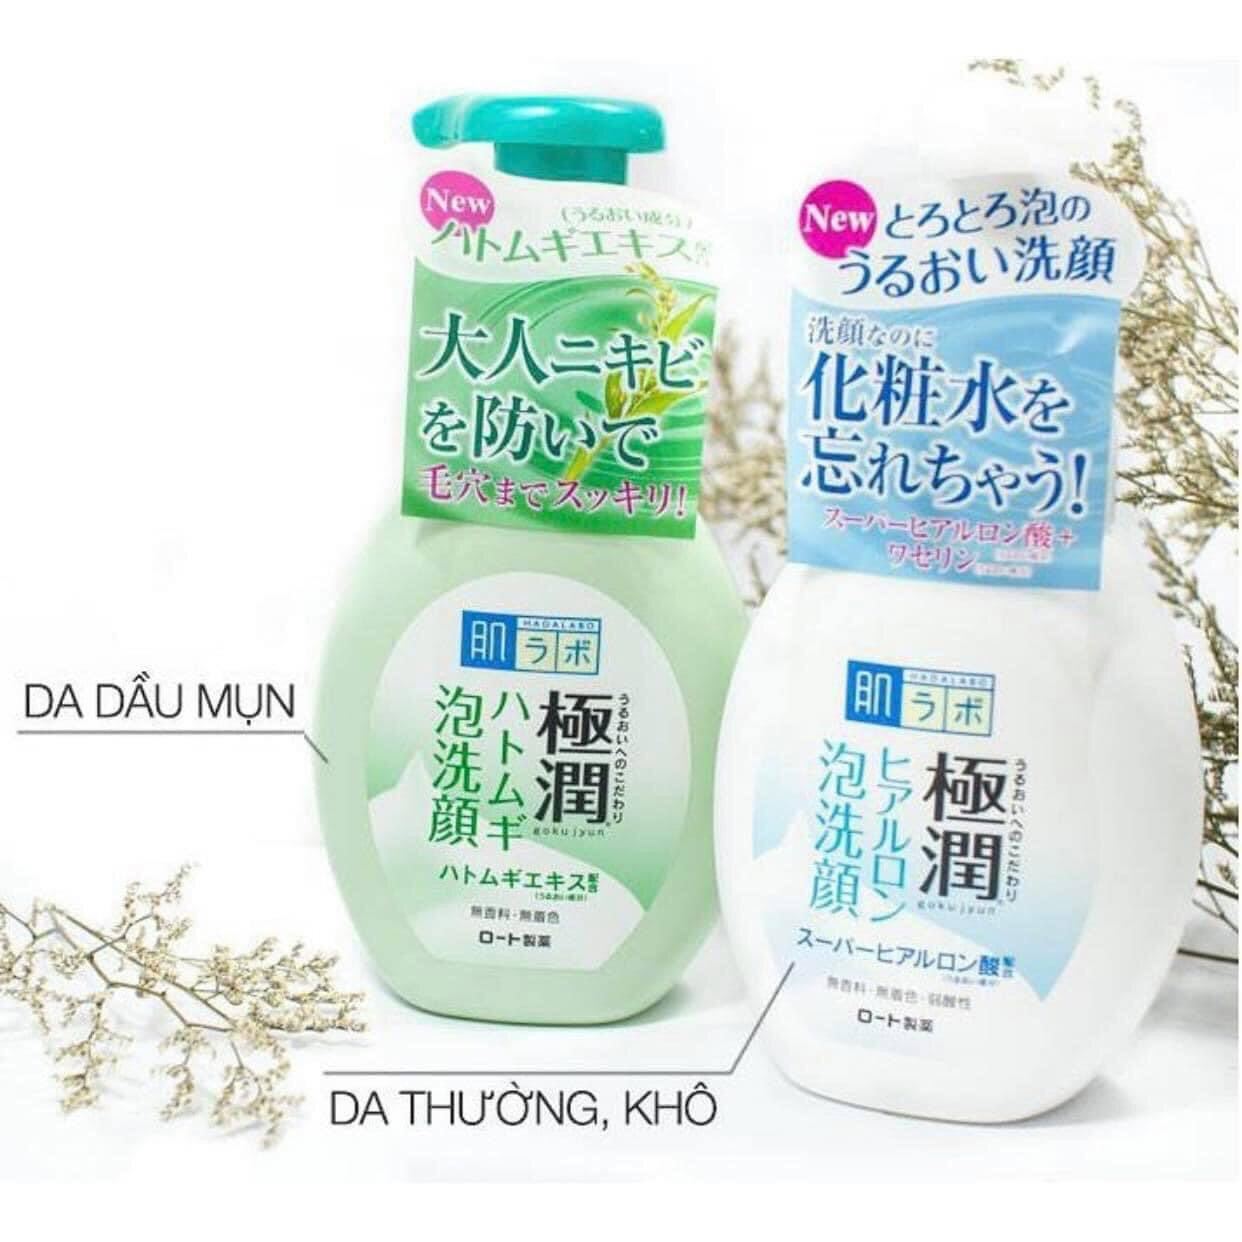 Sữa Rửa Mặt tạo bọt Hada Labo 160ml Nhật Bản. - THEMIS Cosmetics Store